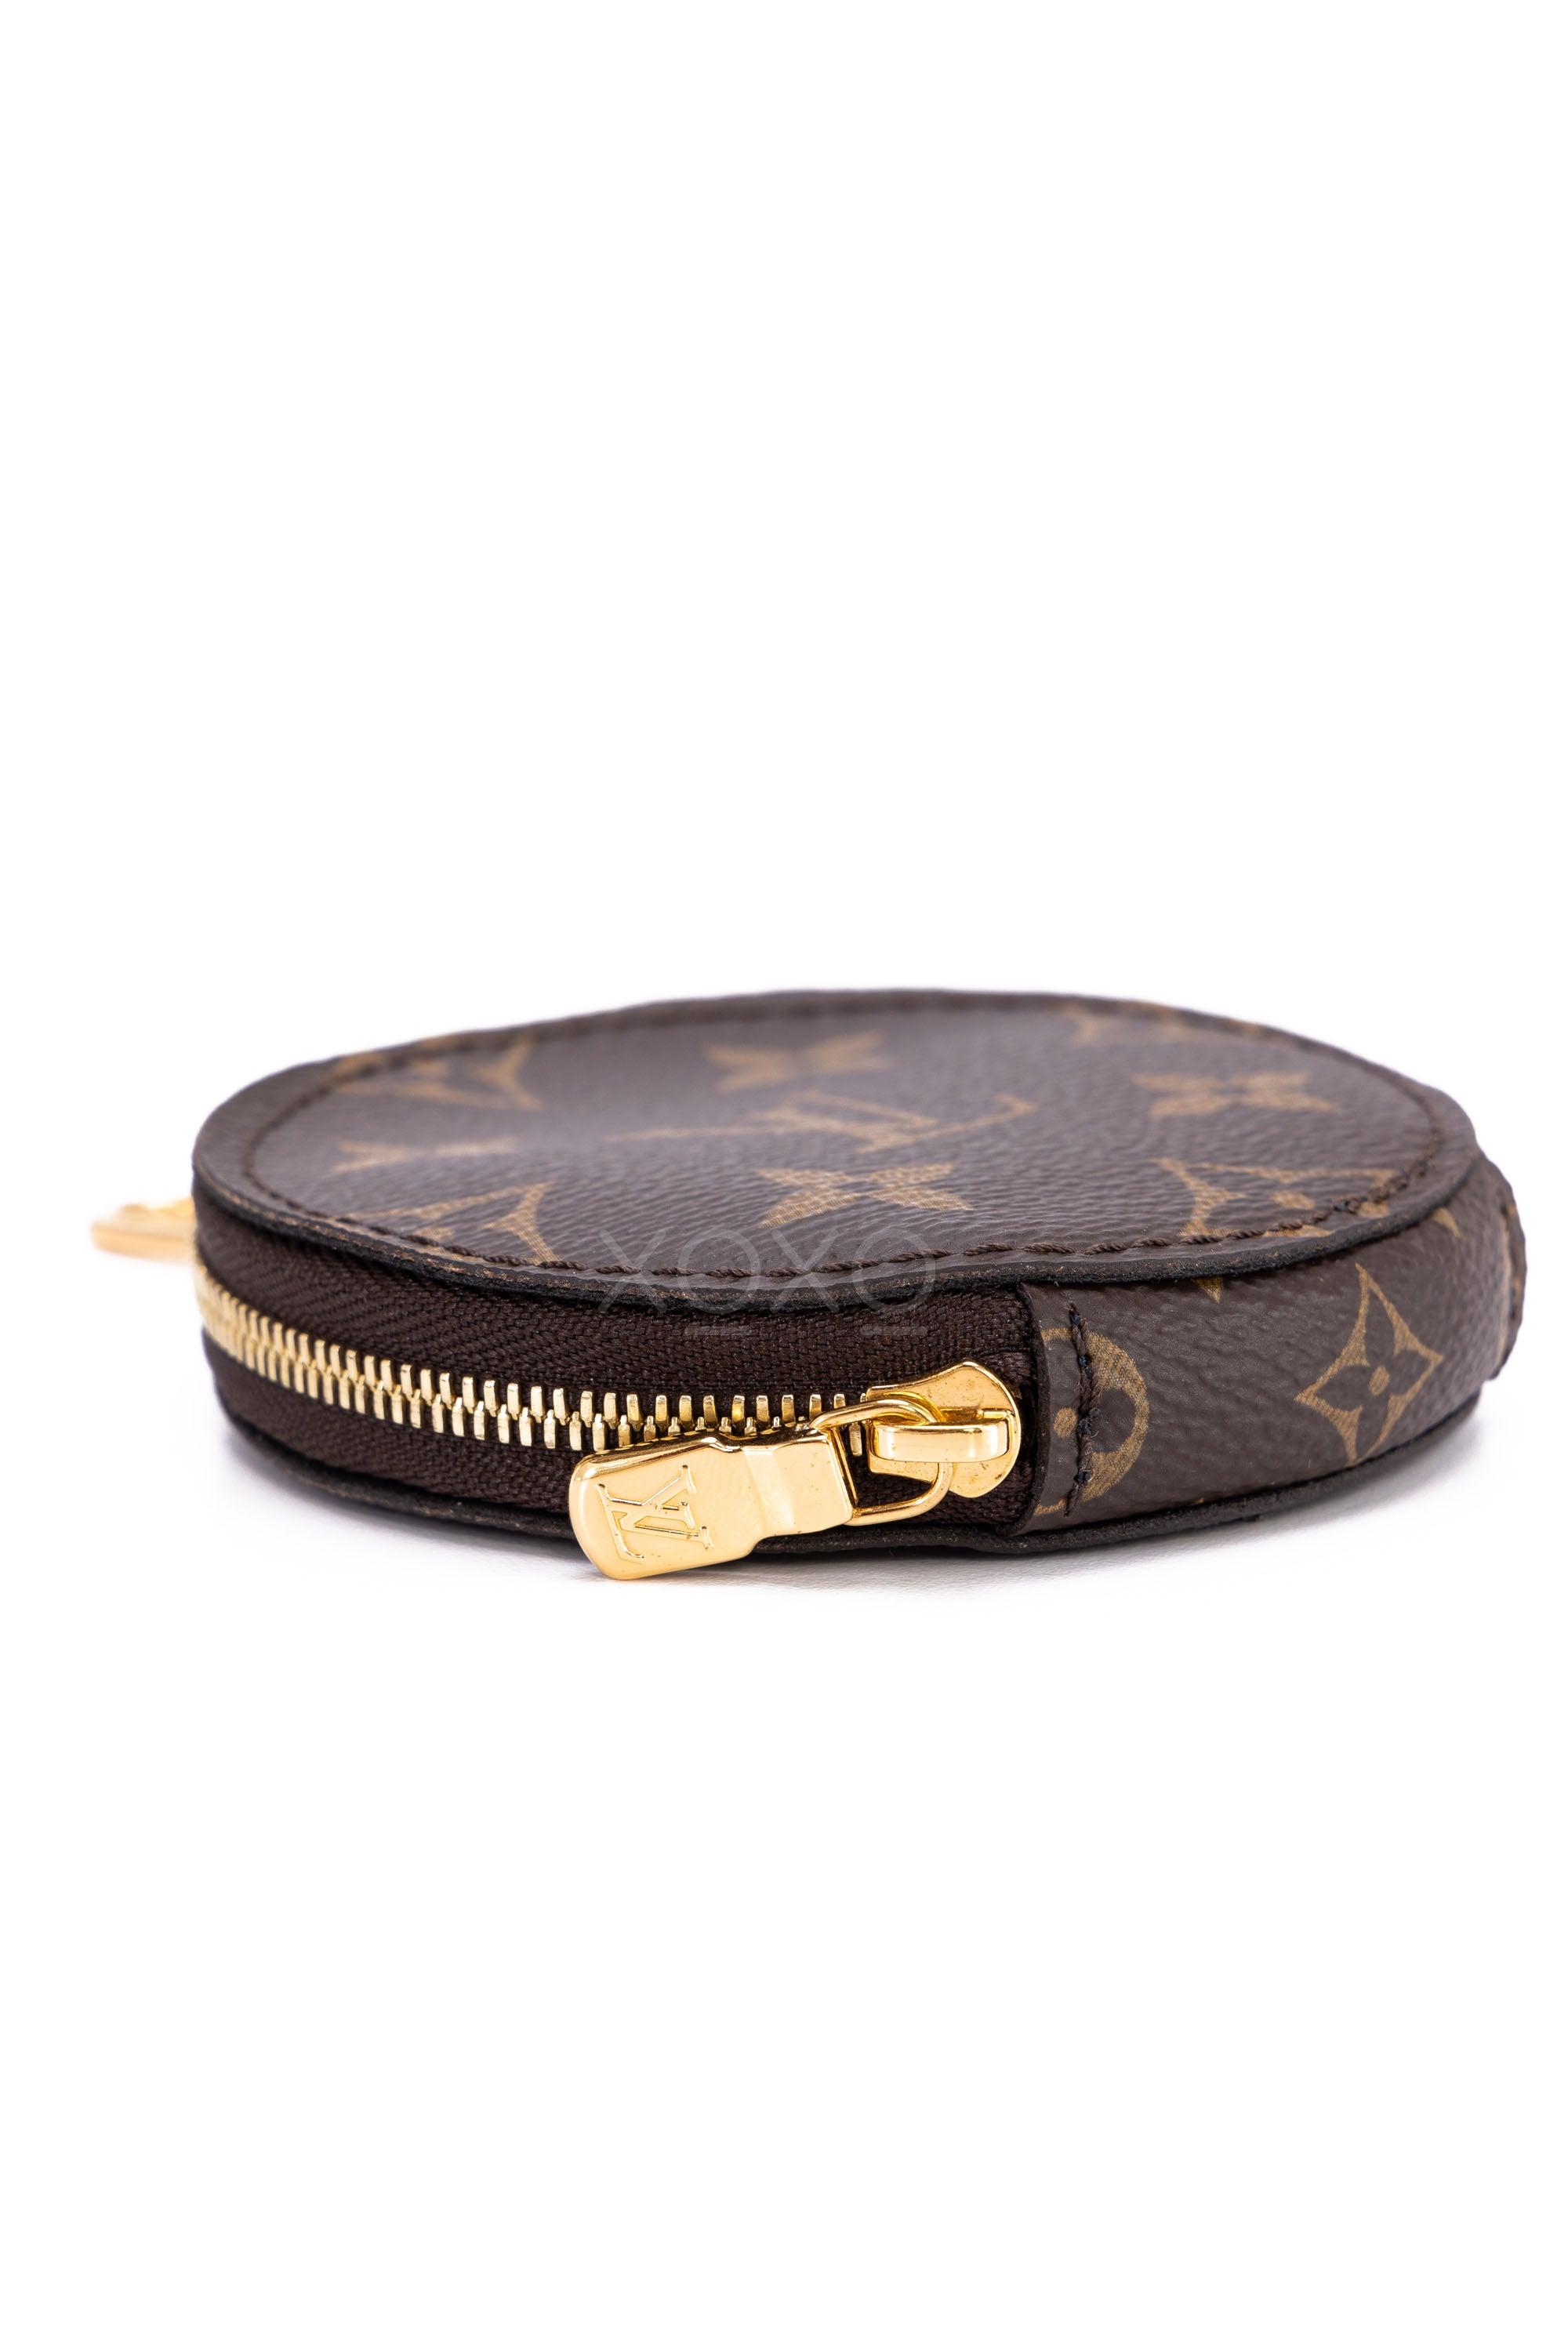 Louis Vuitton Shine Arjang Coin Case Handbag